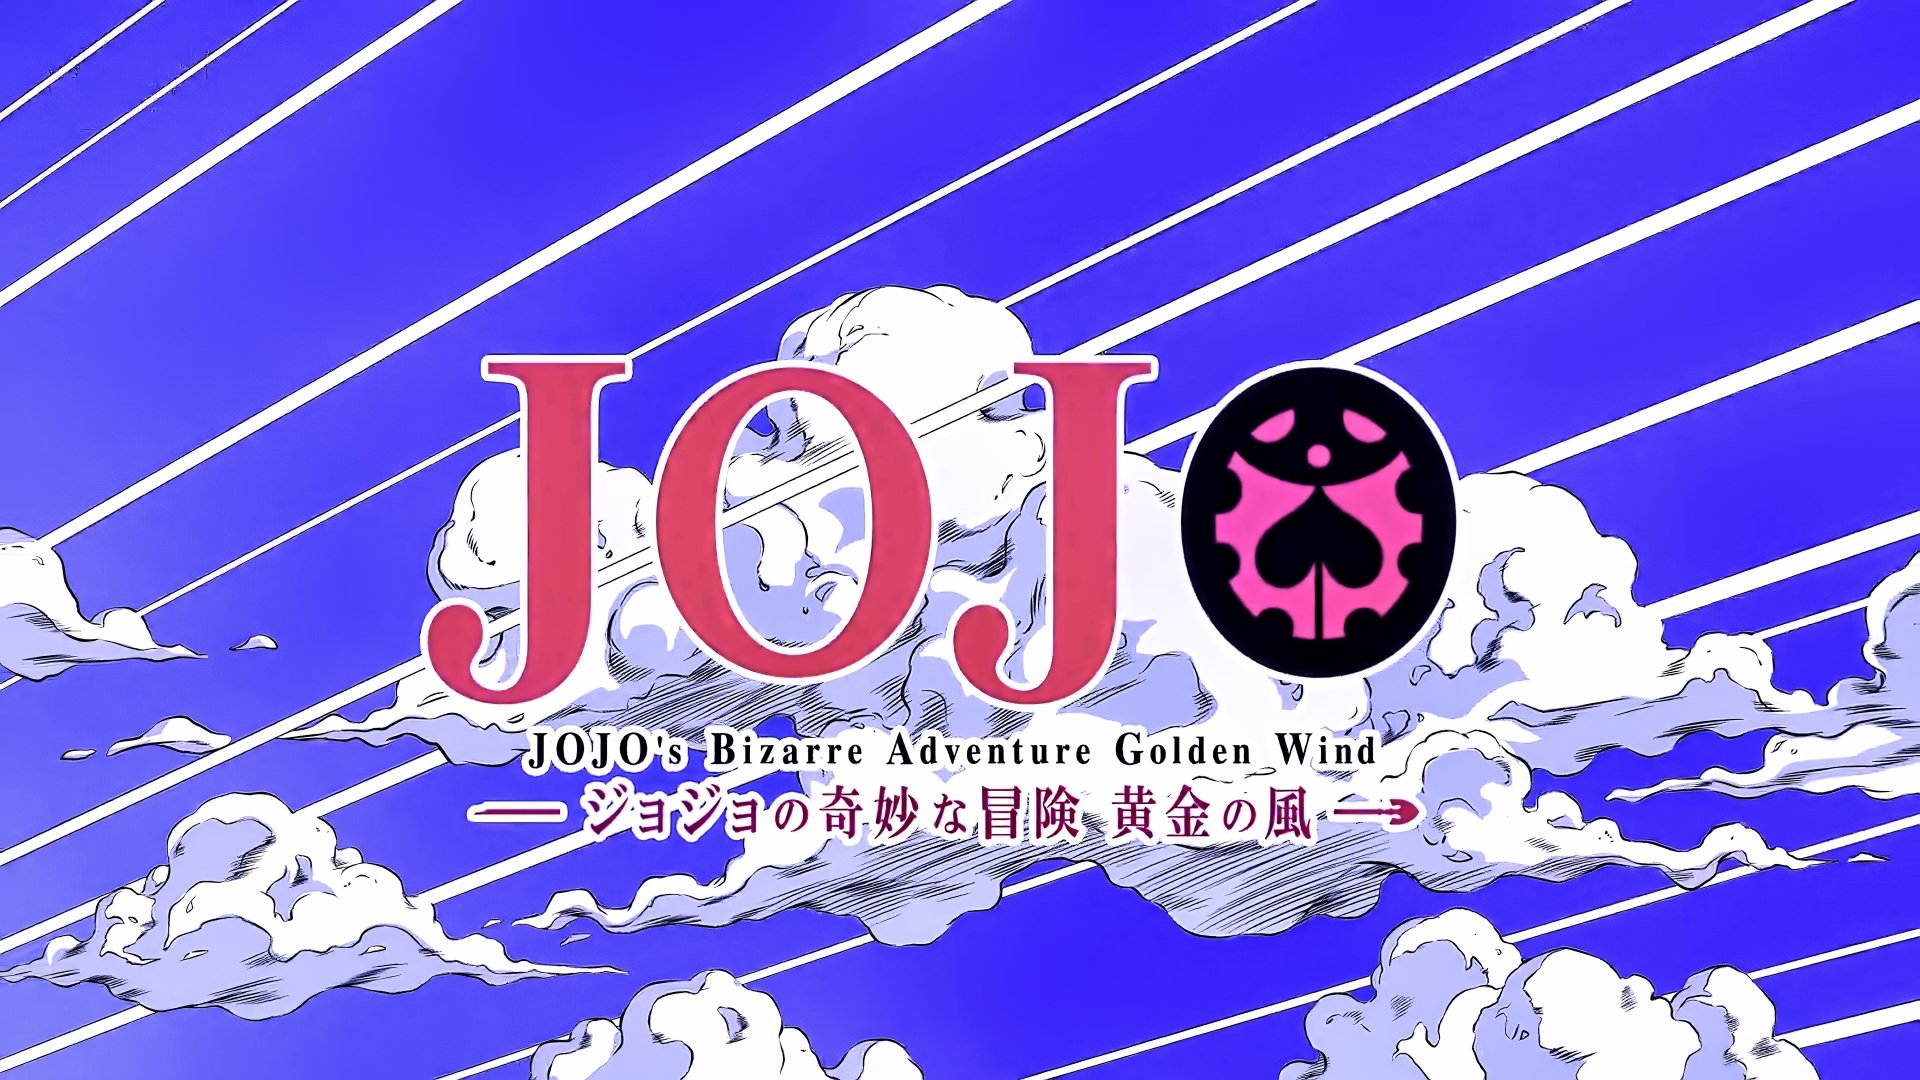 JoJo's Bizarre Adventure: Golden Wind LOGO 8k Ultra HD Wallpaper